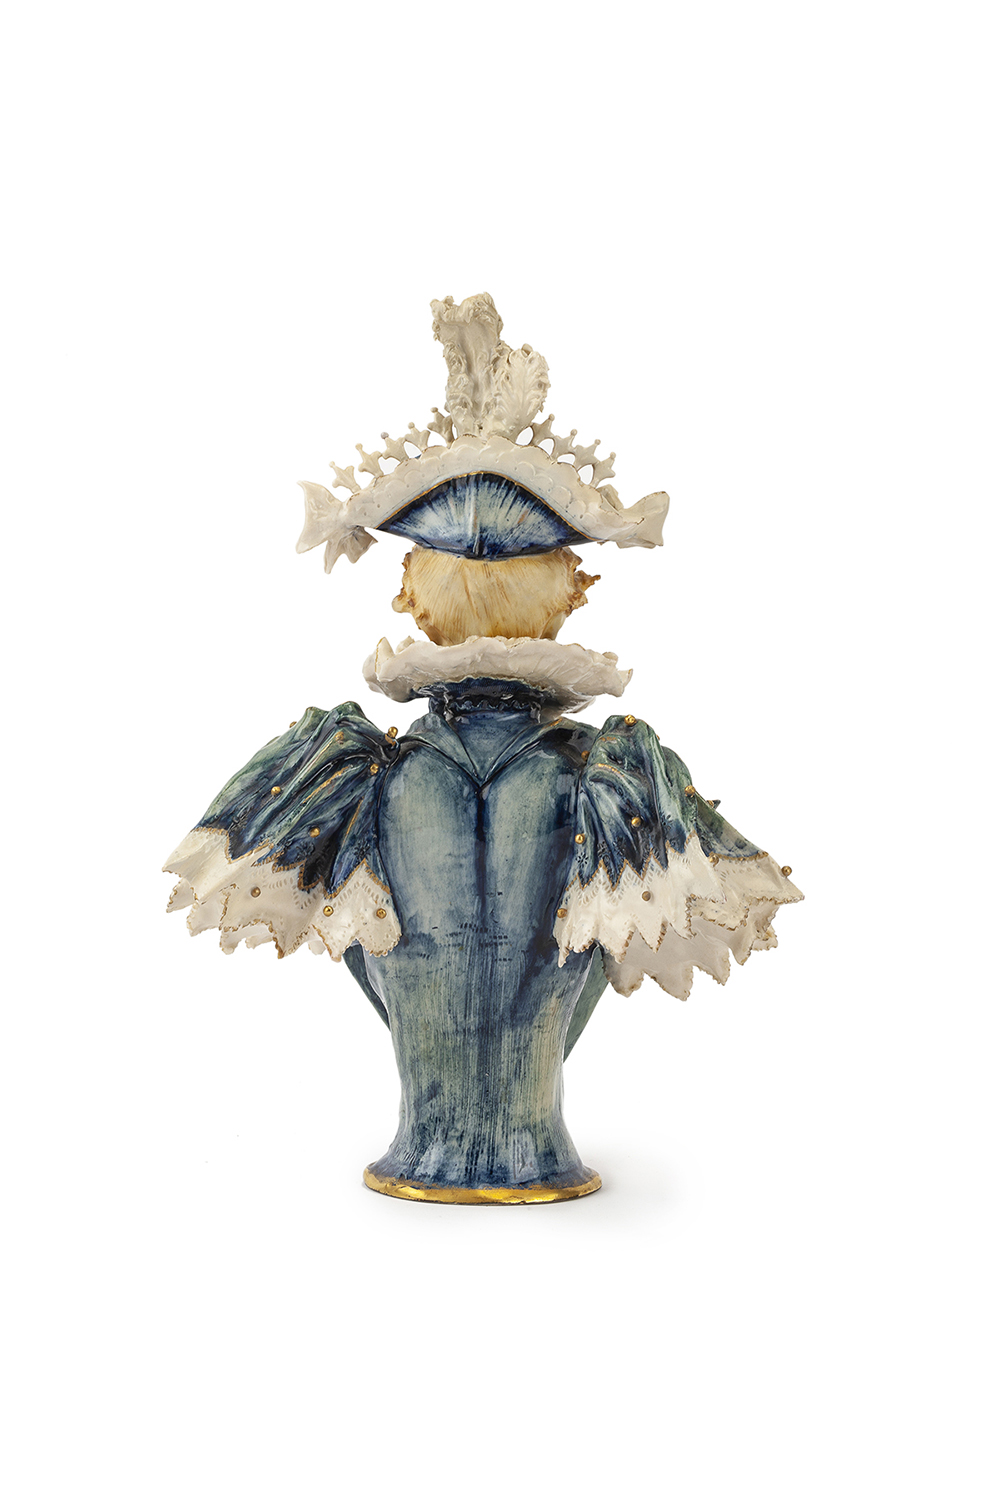 An RStK Amphora porcelain bust of a woman, Eduard Stellmacher - Image 3 of 4